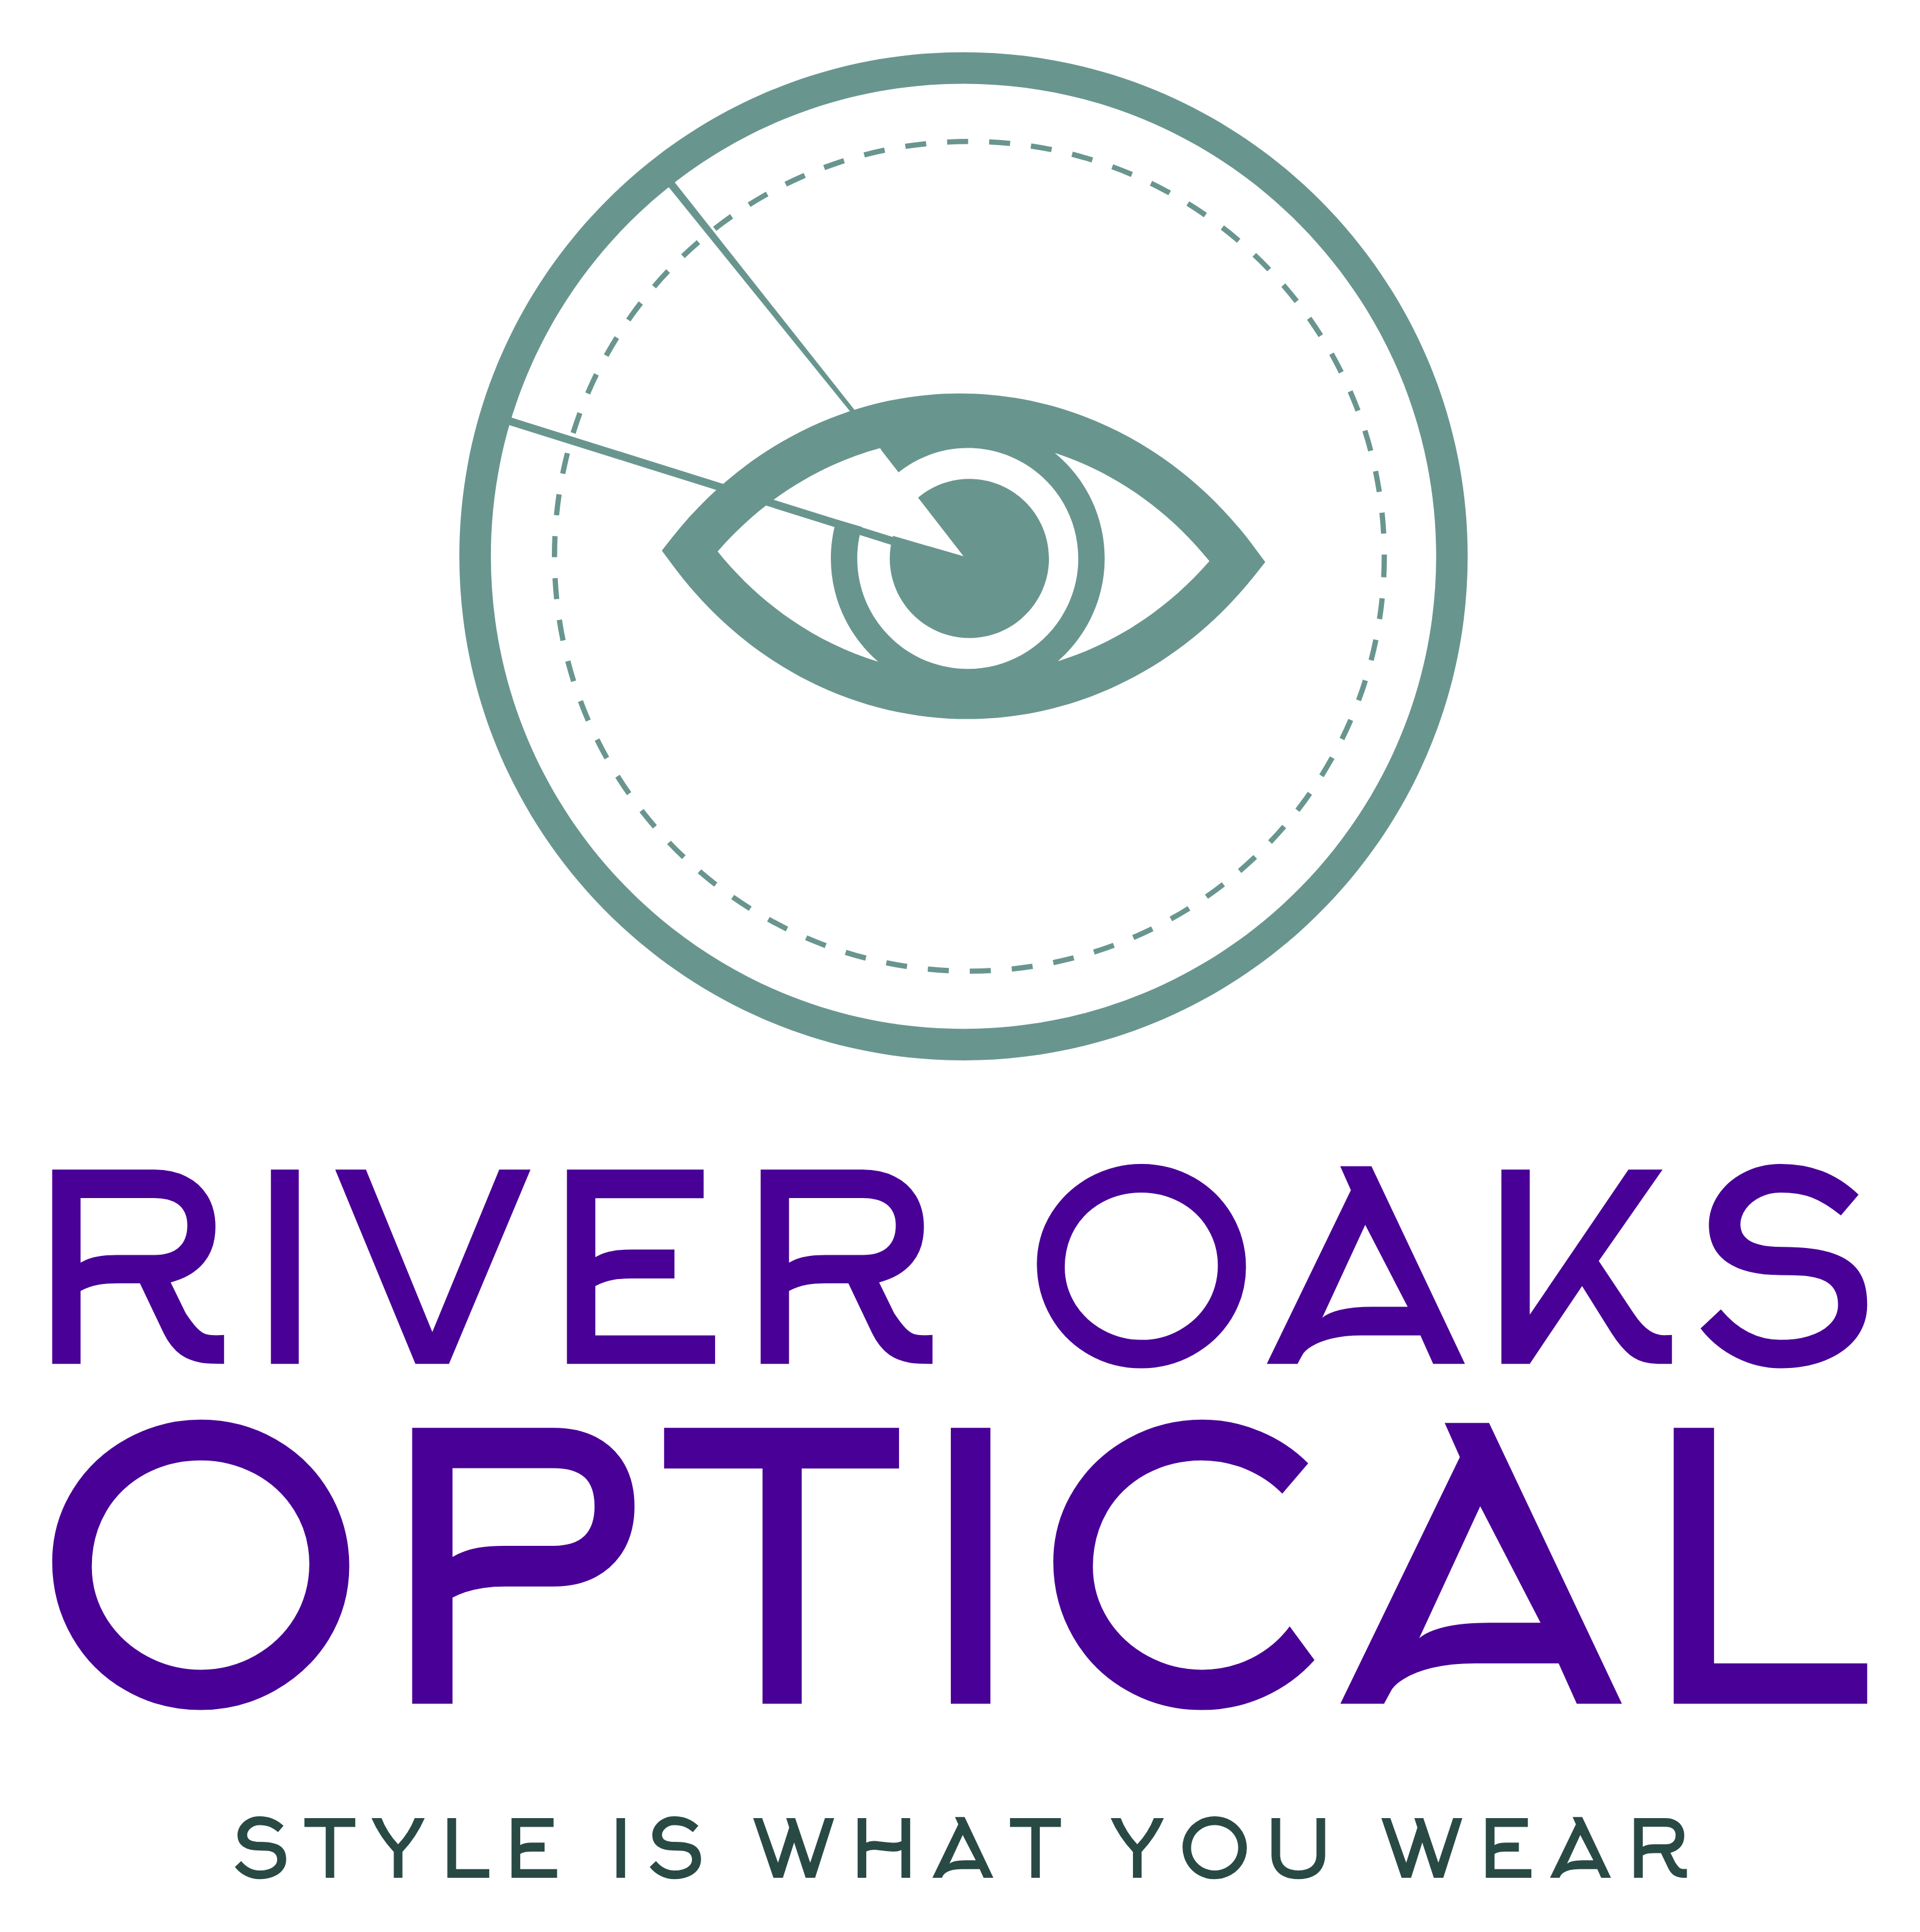 River Oaks Optical